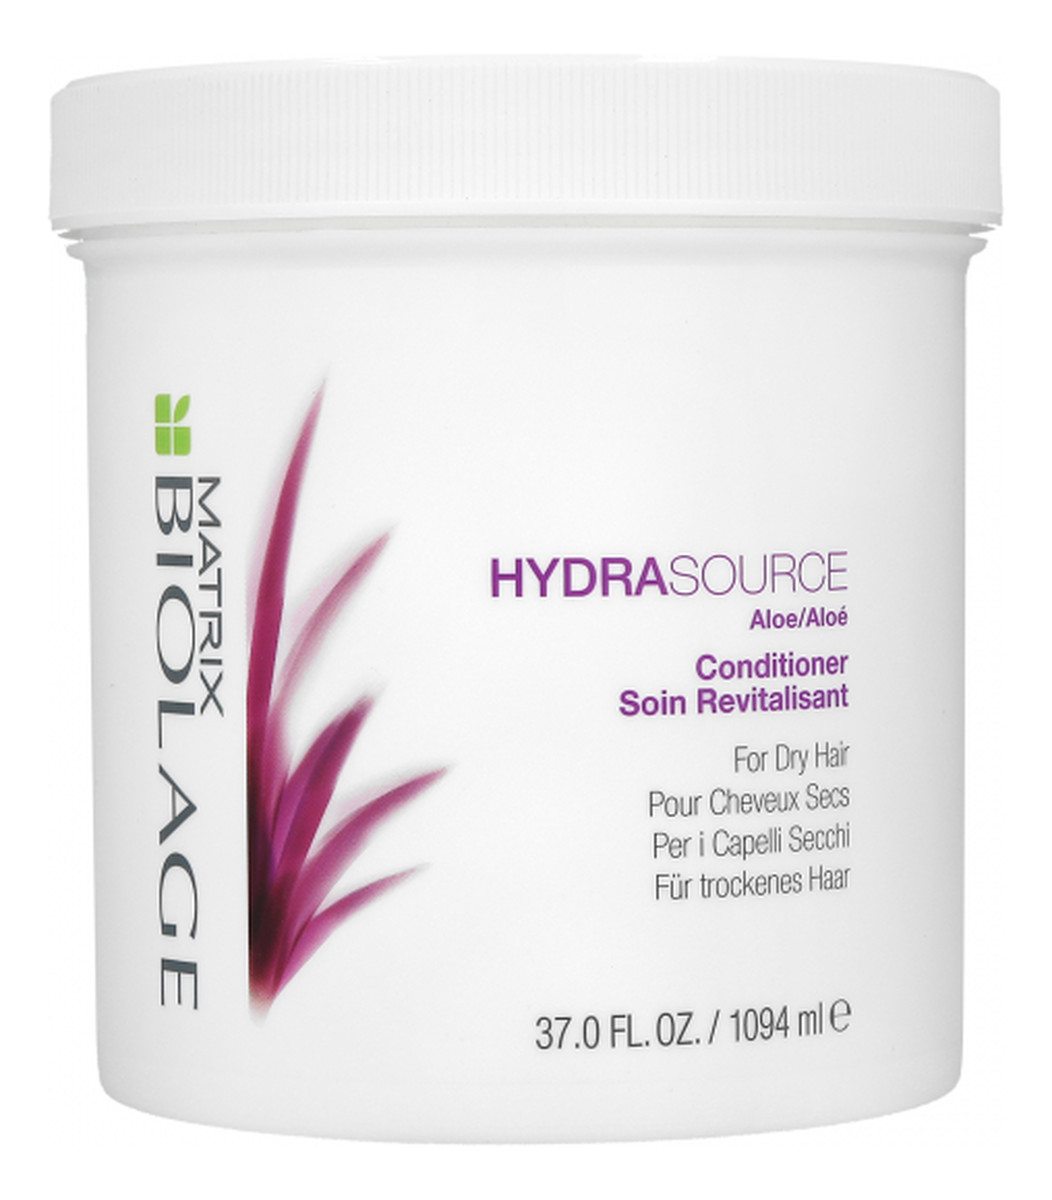 Hydra Source Conditioner For Dry Hair nawilżająca odżywka do suchych włosów